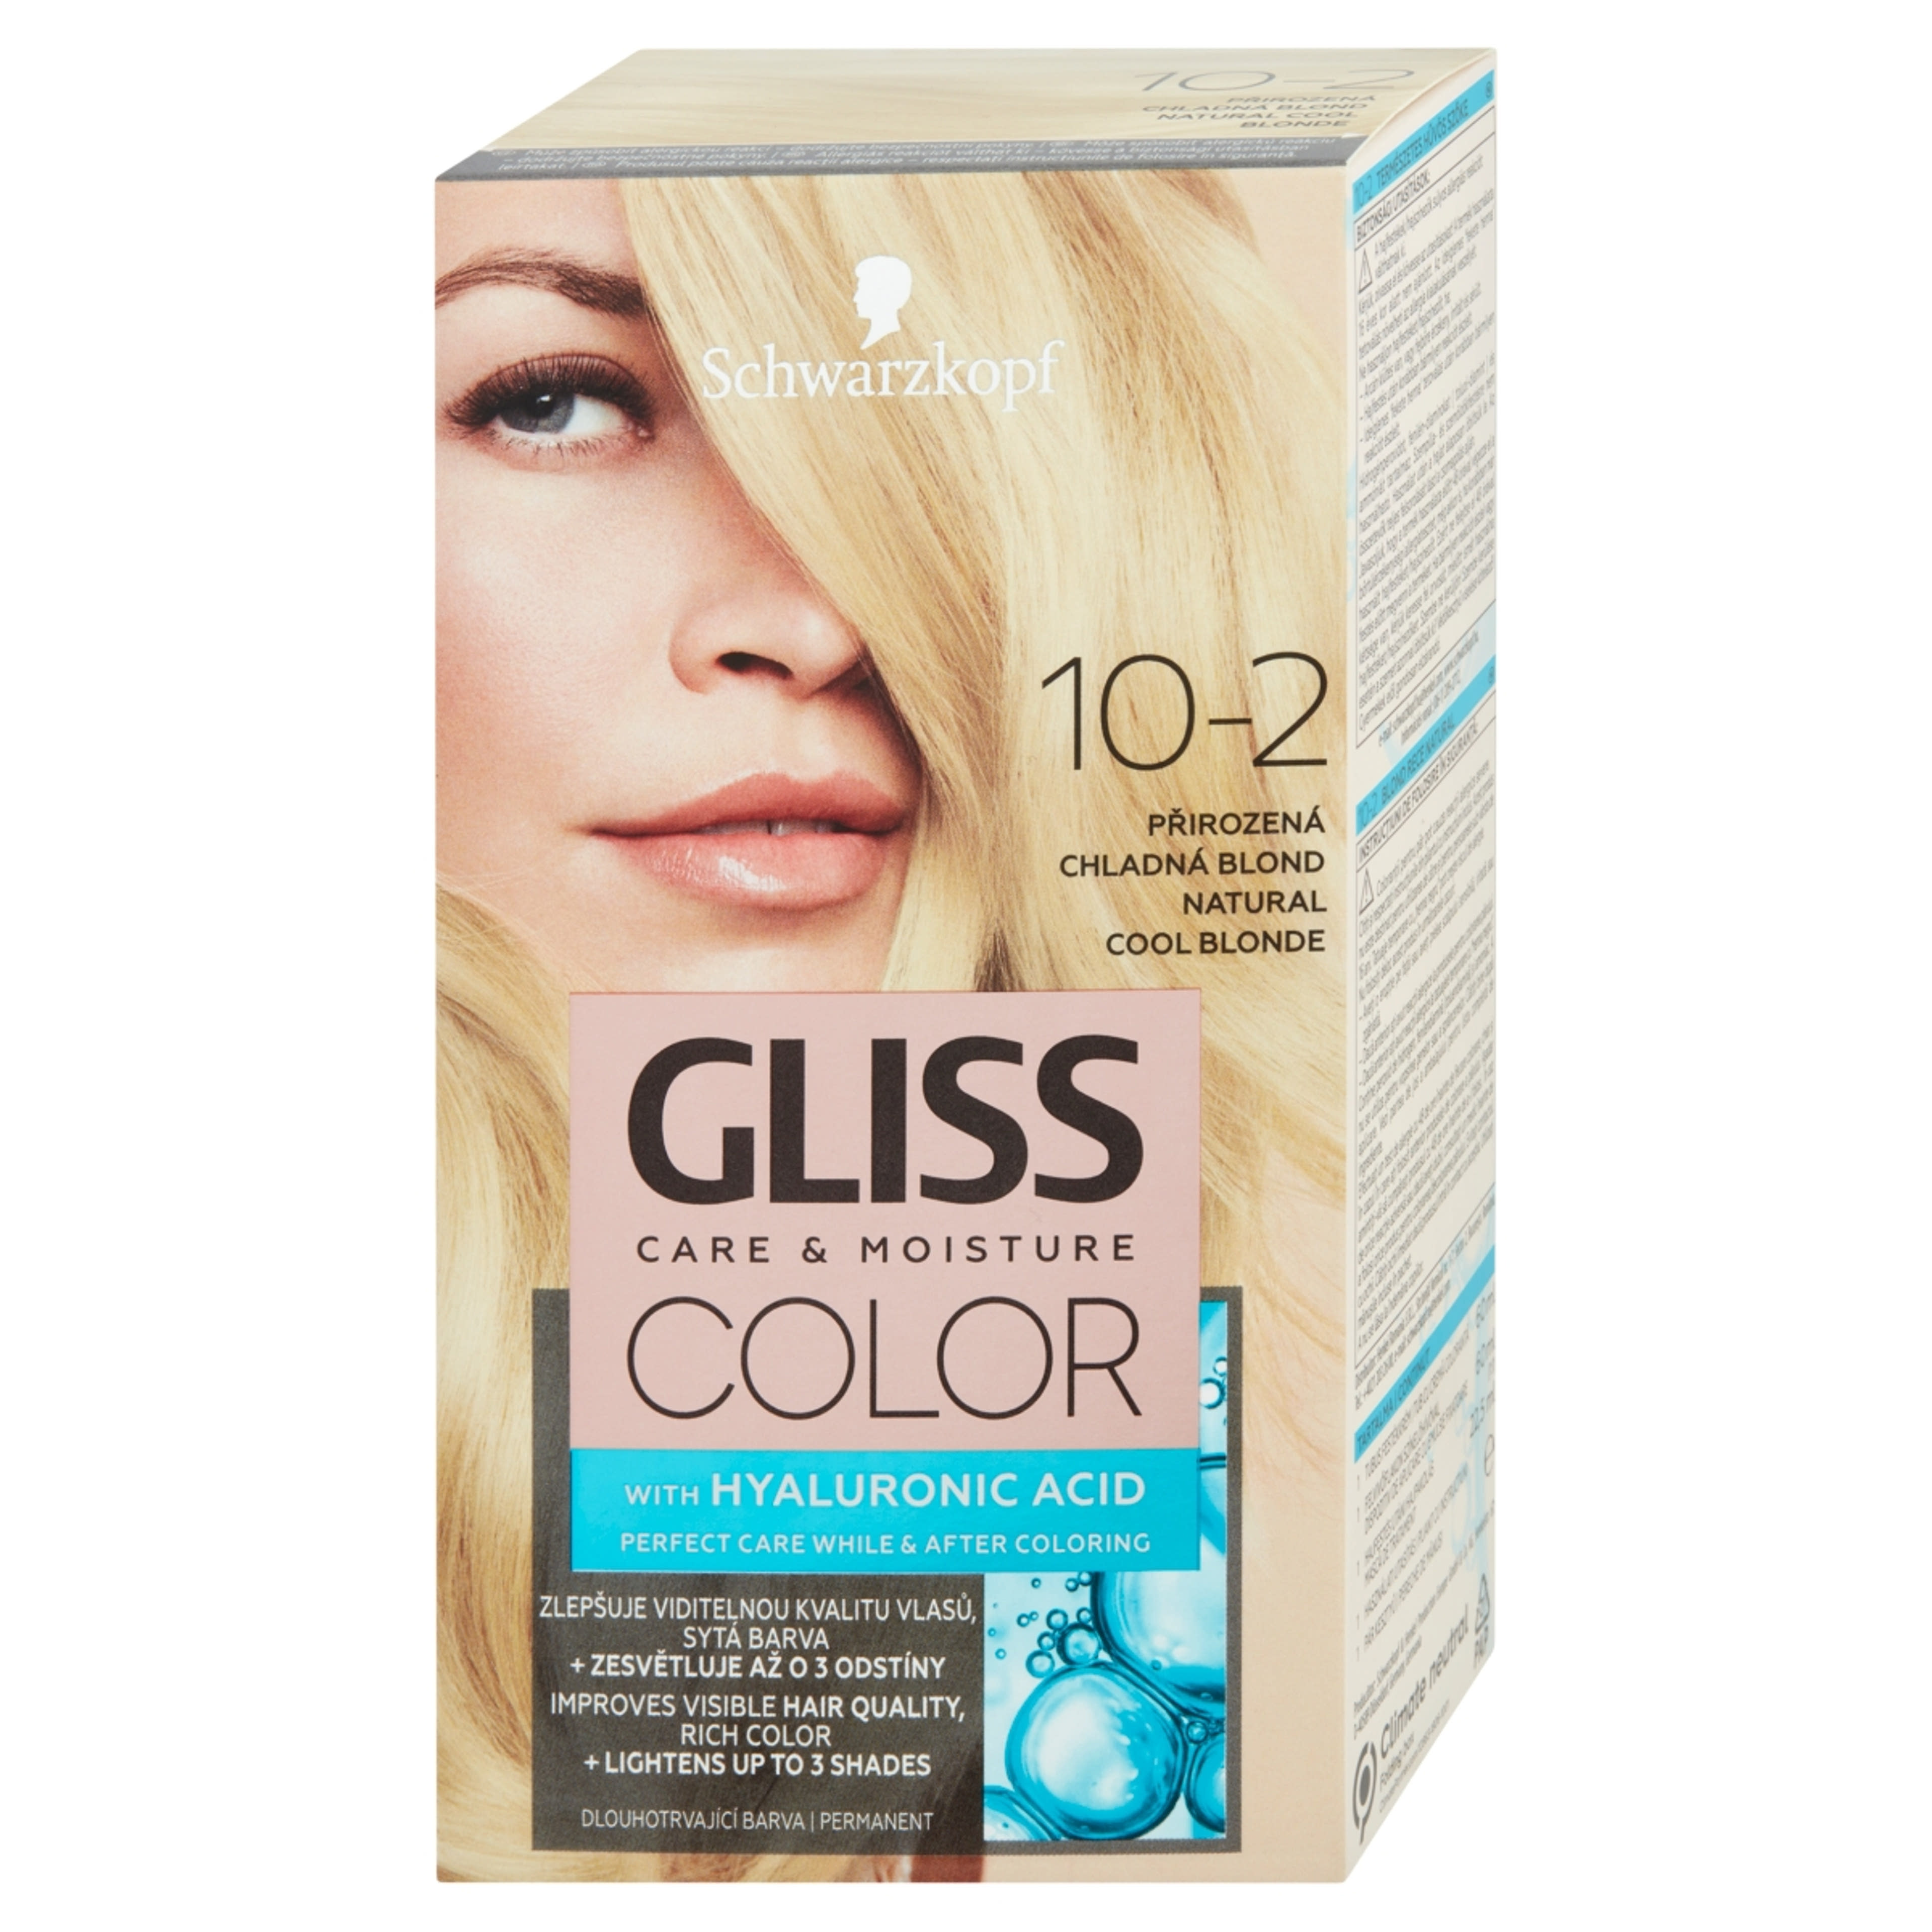 Gliss Color tartós hajfesték 10-2 Természetes hűvös szőke - 1 db-3